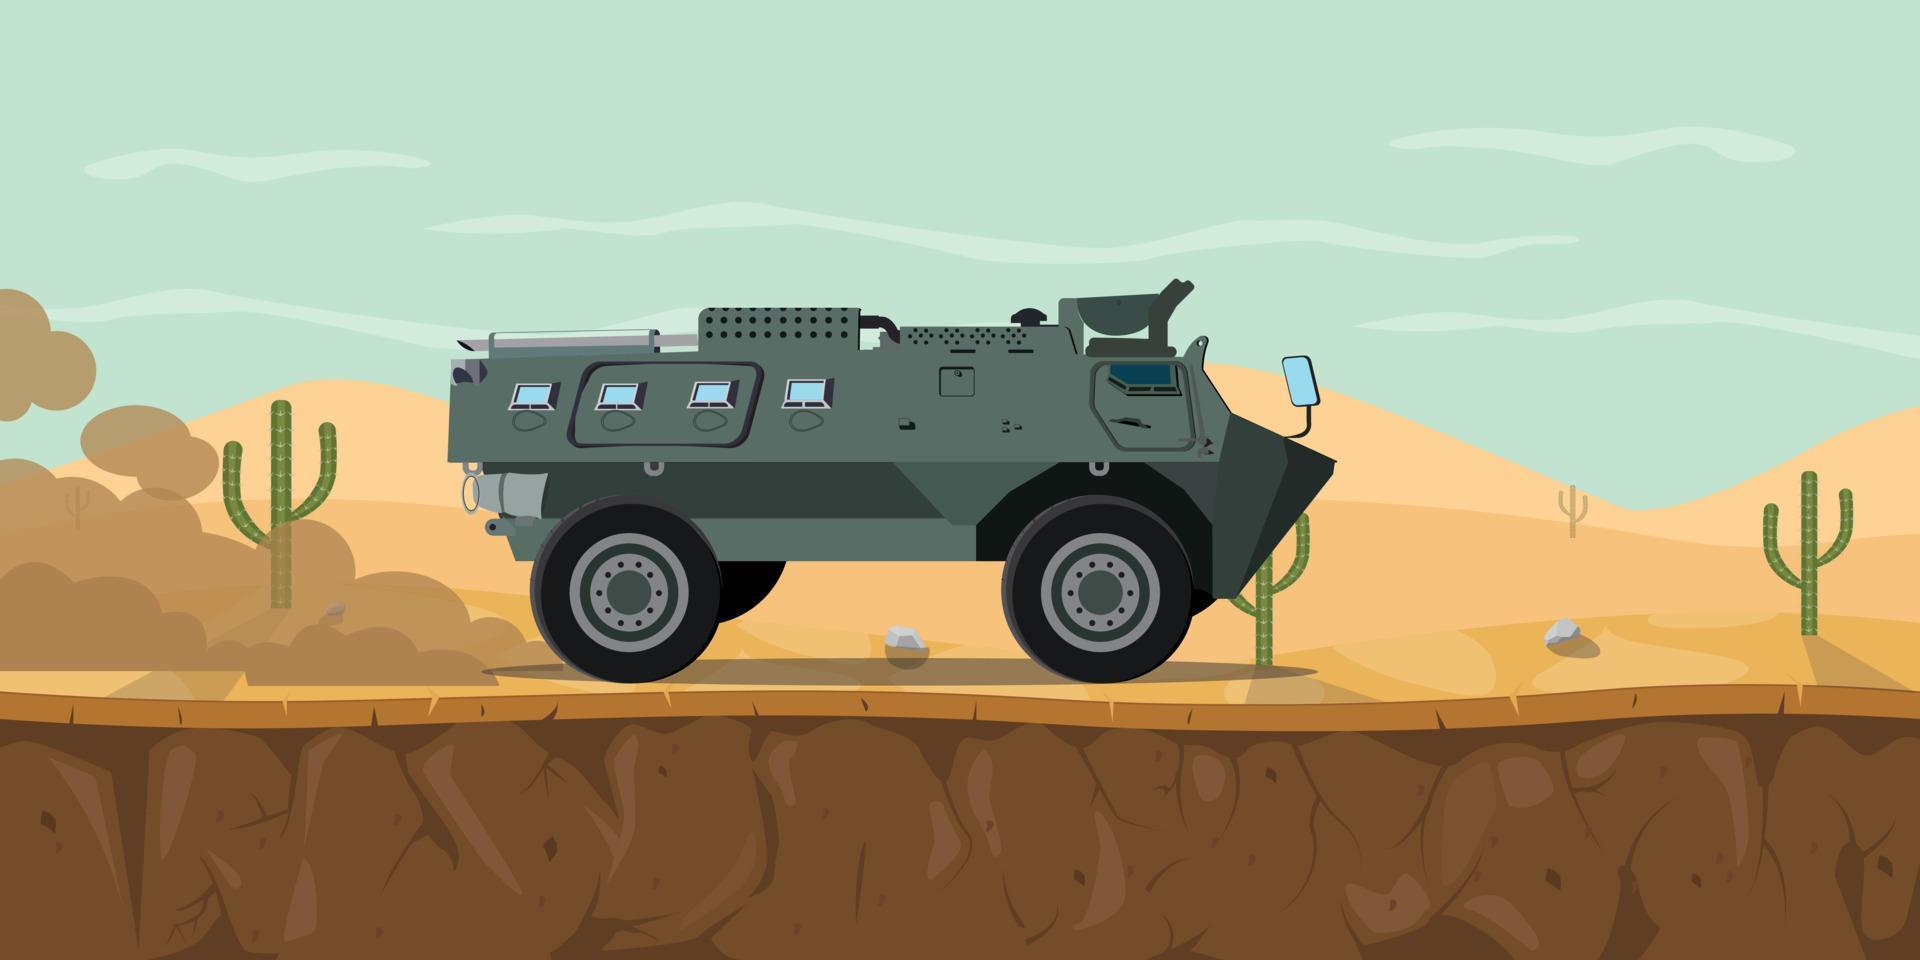 véhicule de transport de chars d'indonésie char de combat principal anoa dans le désert avec fumée de brume sur l'illustration graphique vectorielle de la route vecteur